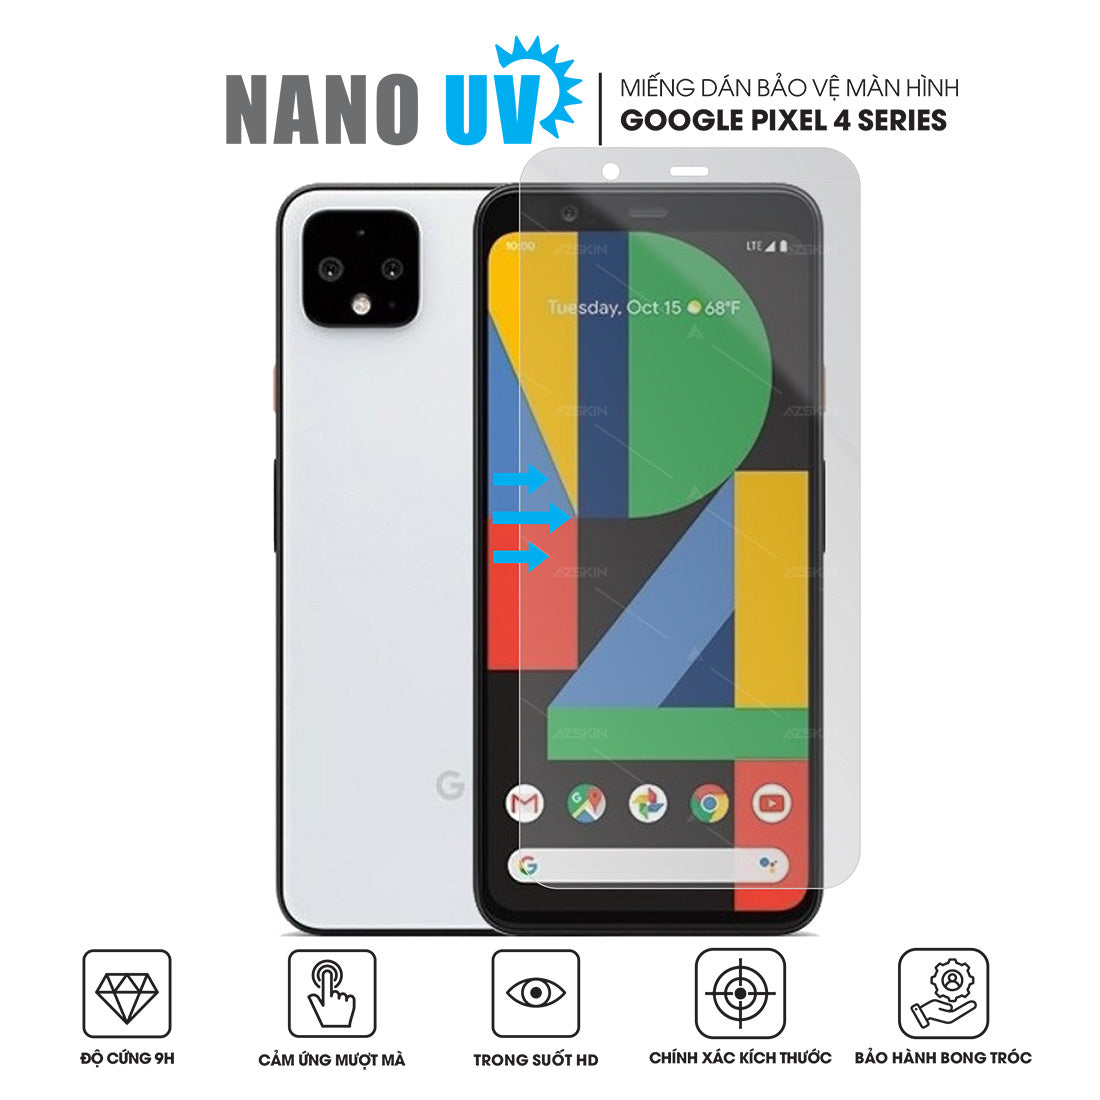 Miếng dán màn hình điện thoại Google Pixel 4 Nano UV